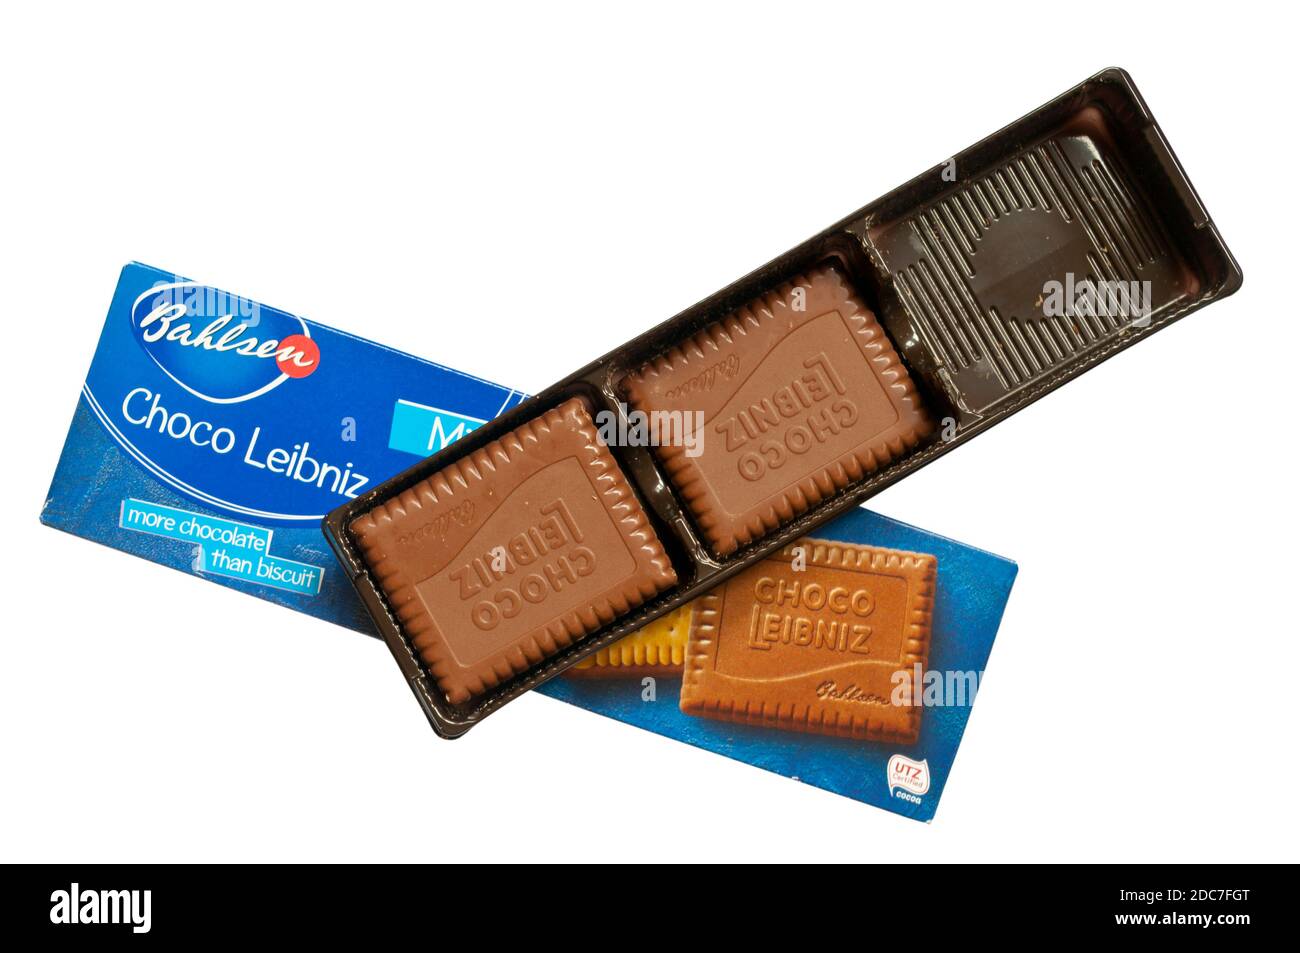 Confezione di biscotti al cioccolato al latte Bahlsen Choco Leibniz Foto Stock